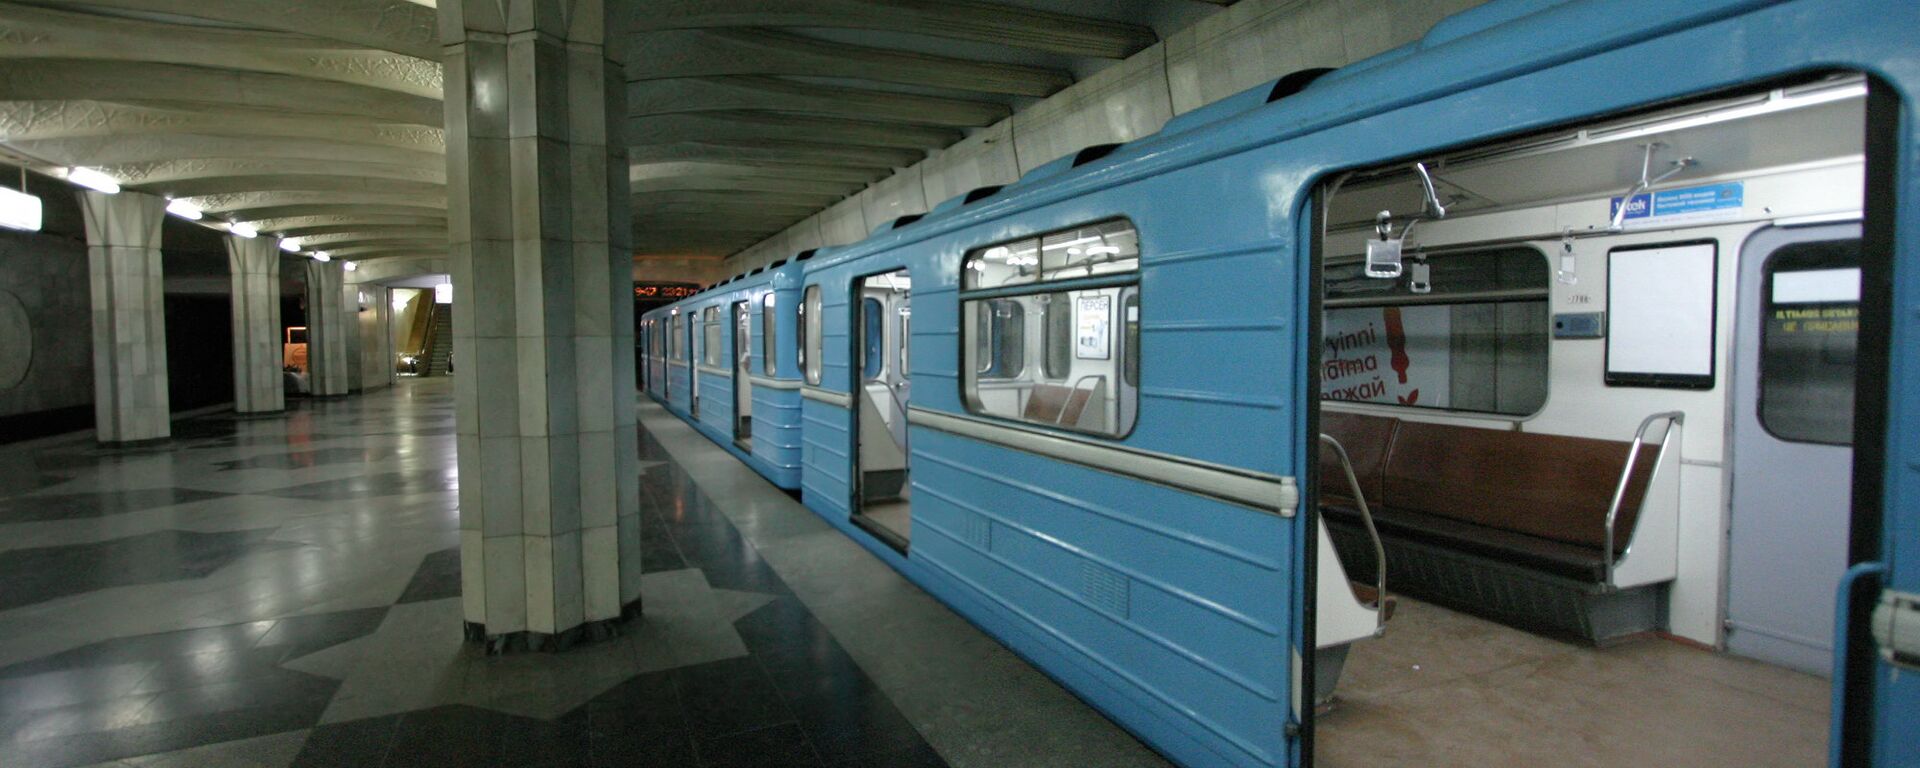 Станция метро в Ташкенте, архивное фото - Sputnik Таджикистан, 1920, 05.07.2021